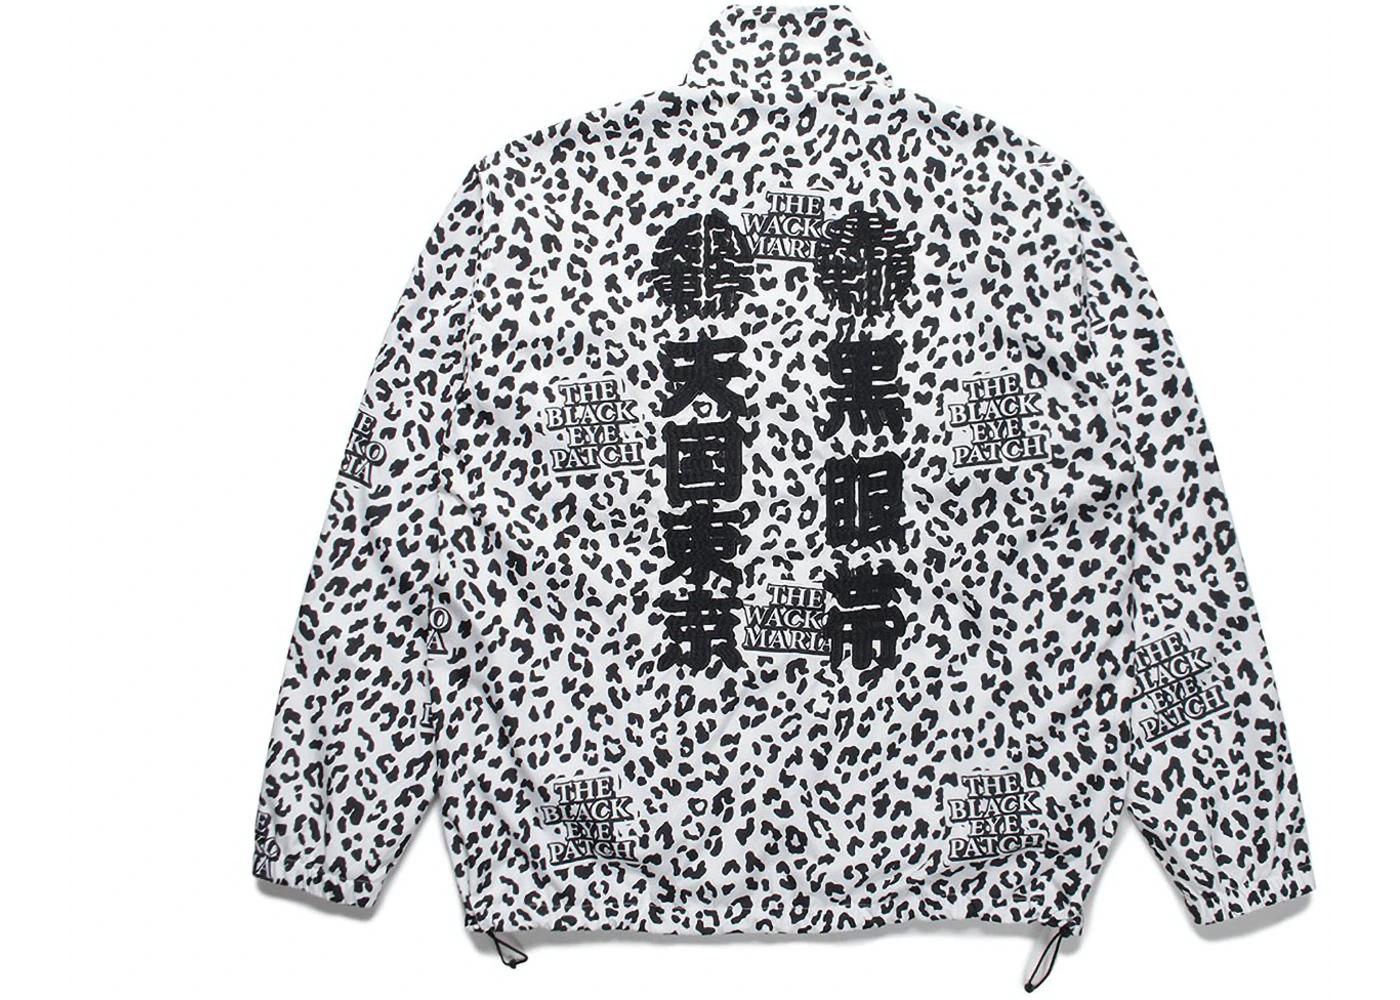 BlackEyePatch x Wacko Maria Track Jacket White Leopard by BLACKEYEPATCH